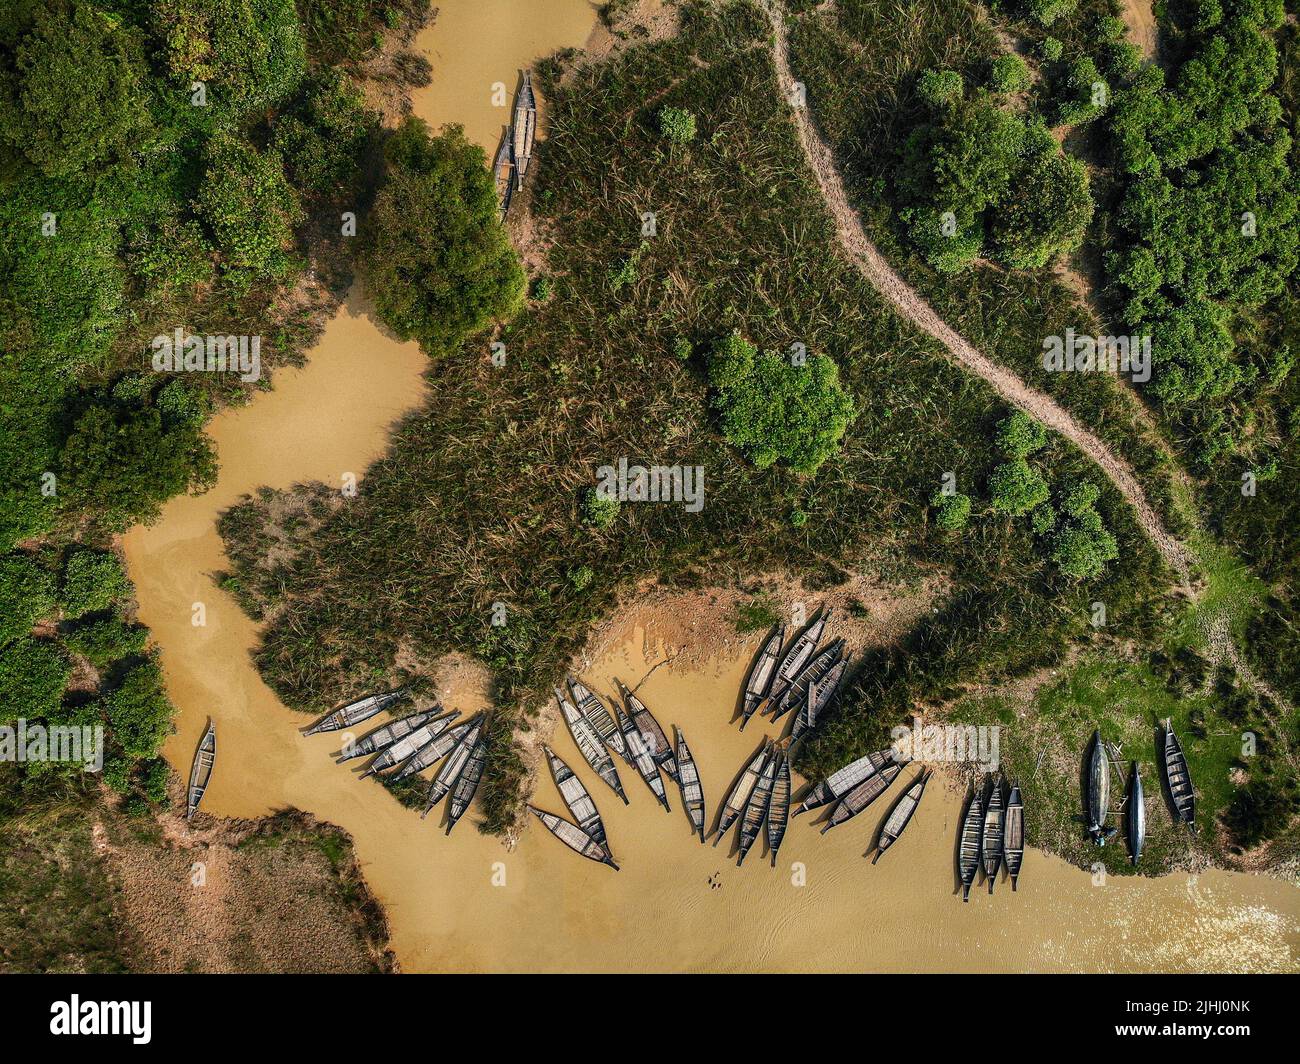 Am Flussufer sind hölzerne Boote aufgestellt, die verschiedene schöne visuelle Muster geschaffen haben. Stockfoto